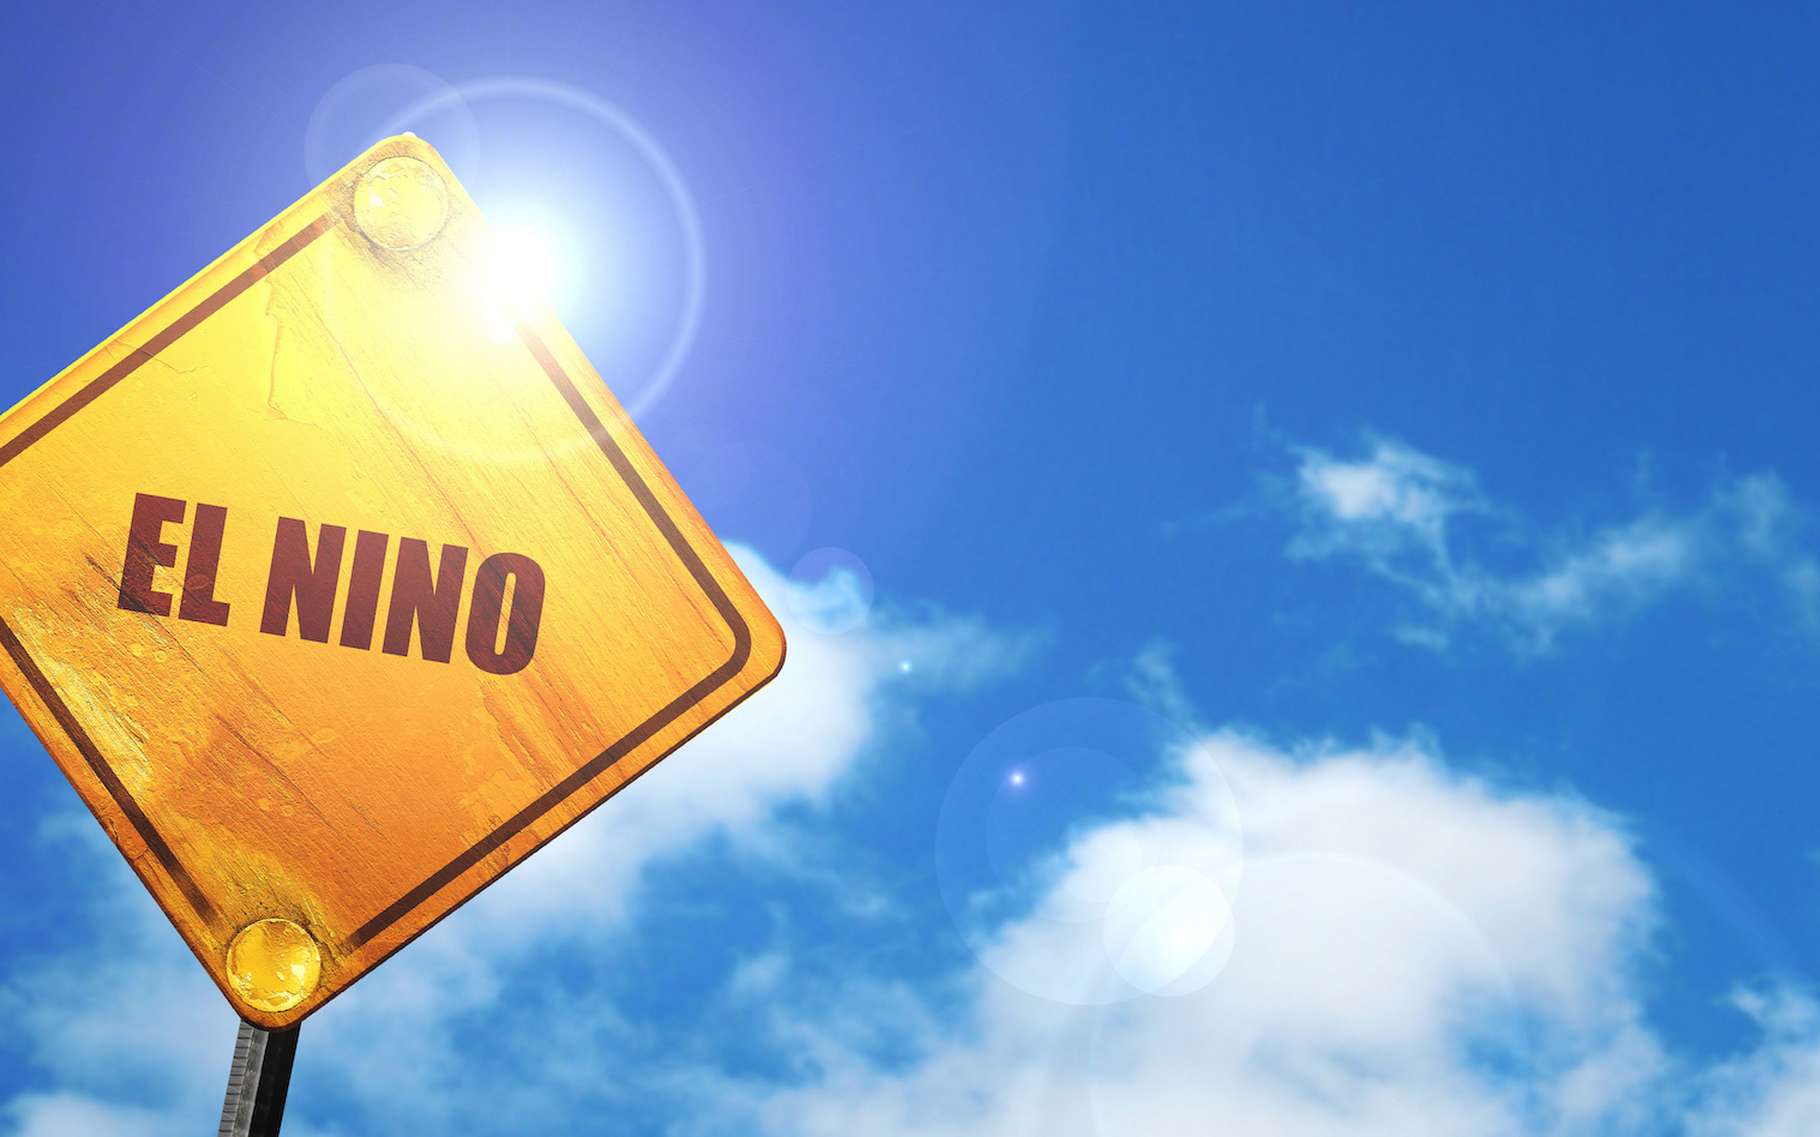 Le phénomène El Niño sera-t-il aussi extrême que le redoutaient les scientifiques ?